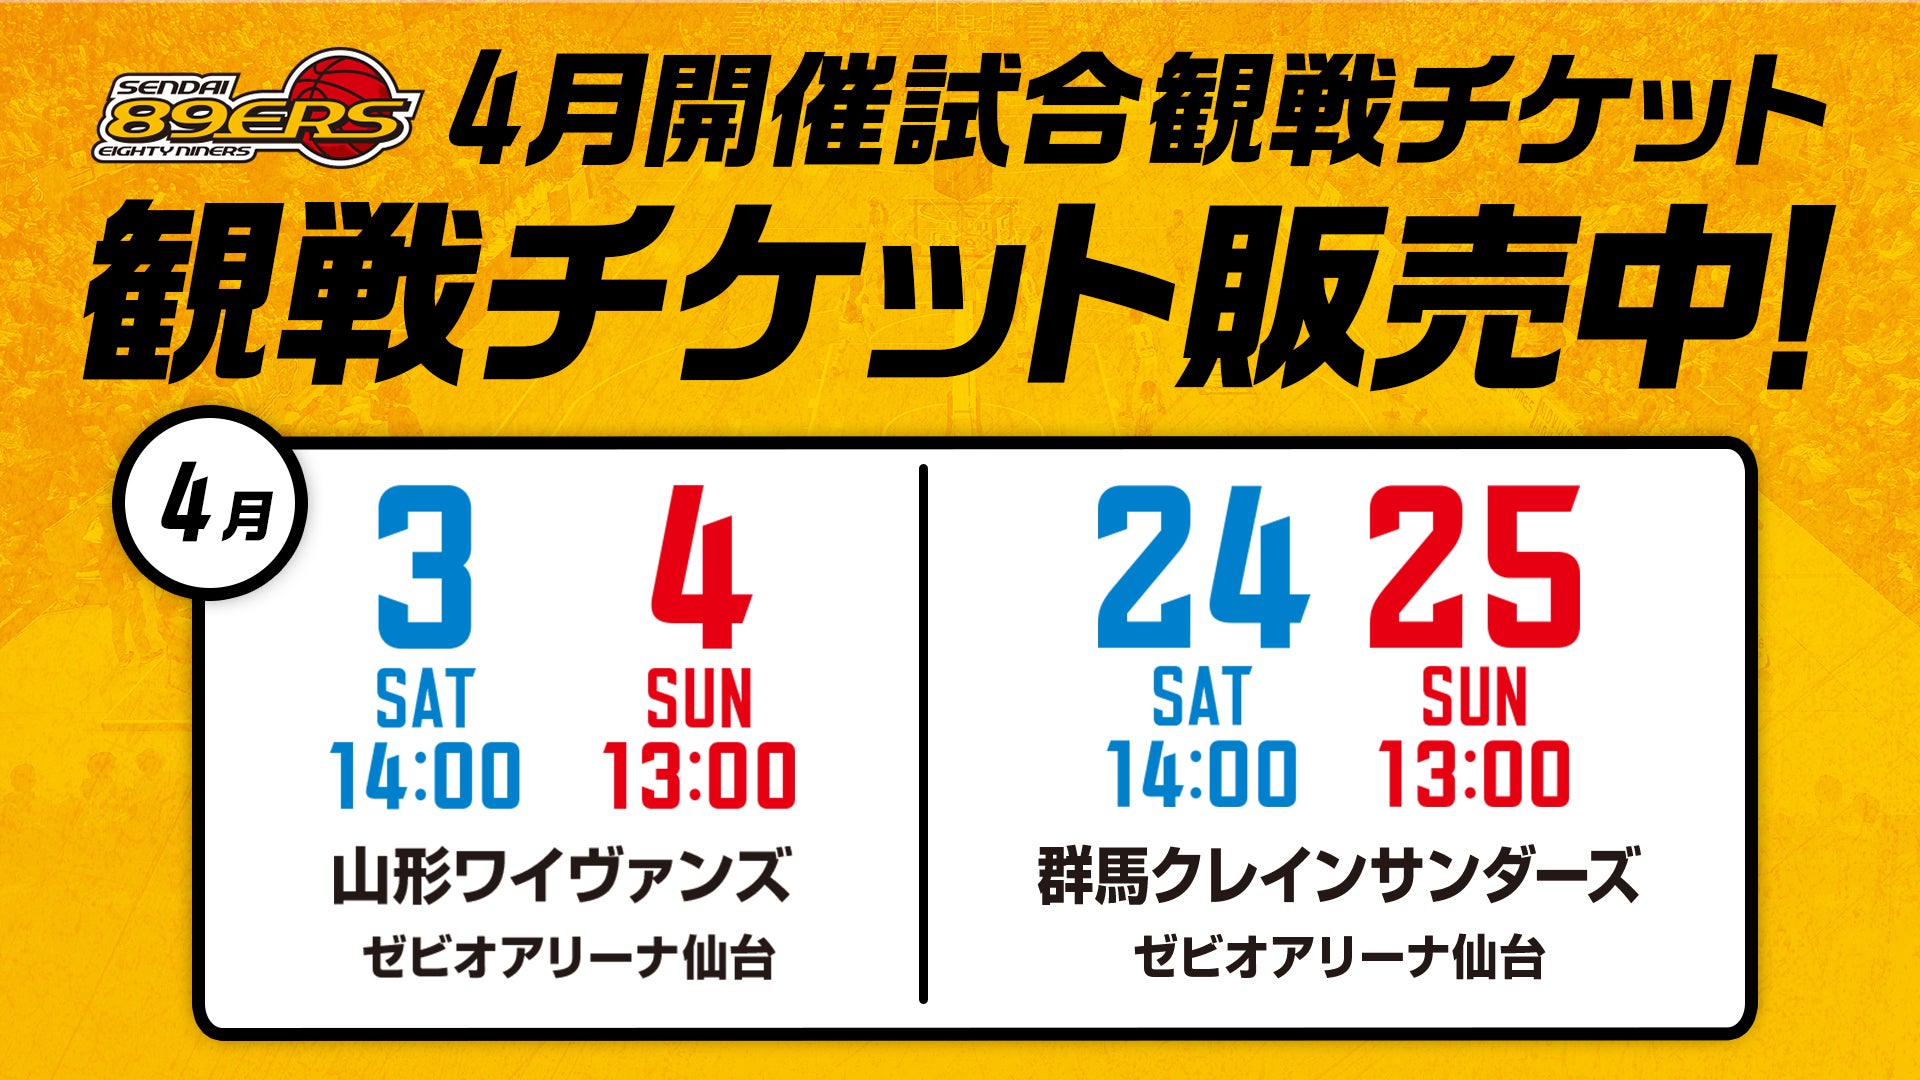 4月開催4試合の観戦チケット発売概要のお知らせ | 仙台89ERS